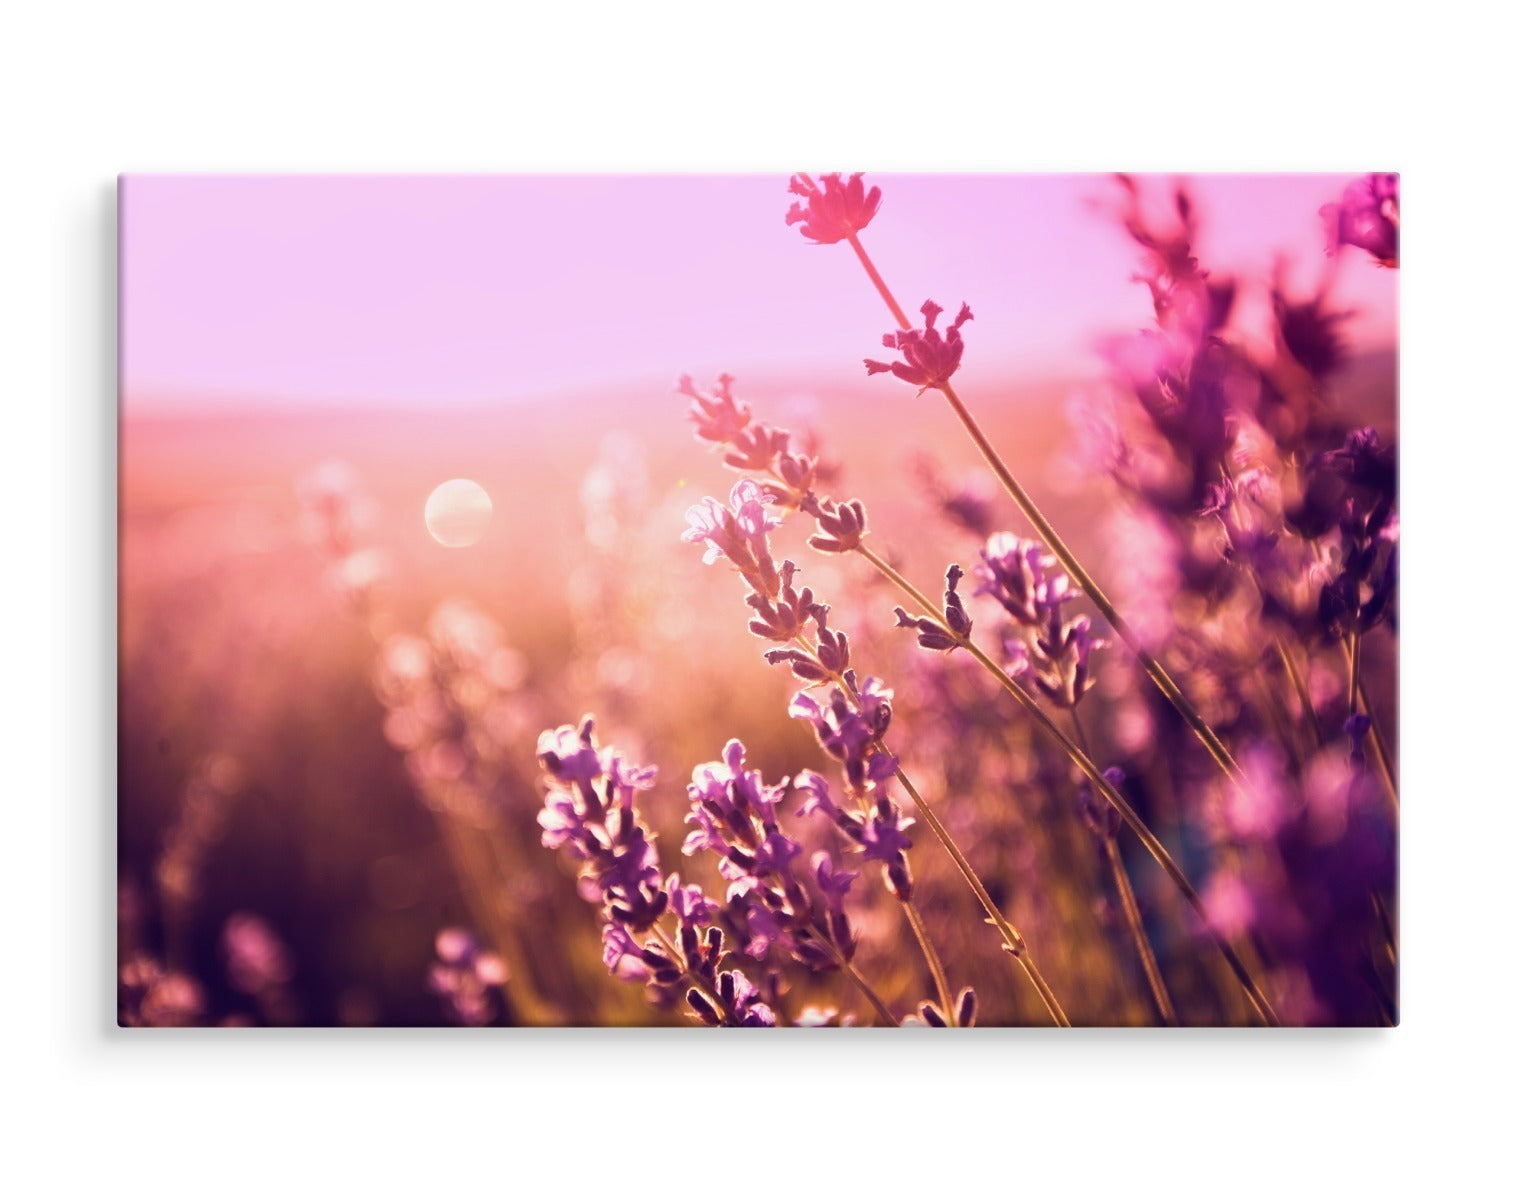 Lavendel blomster i solen 3d